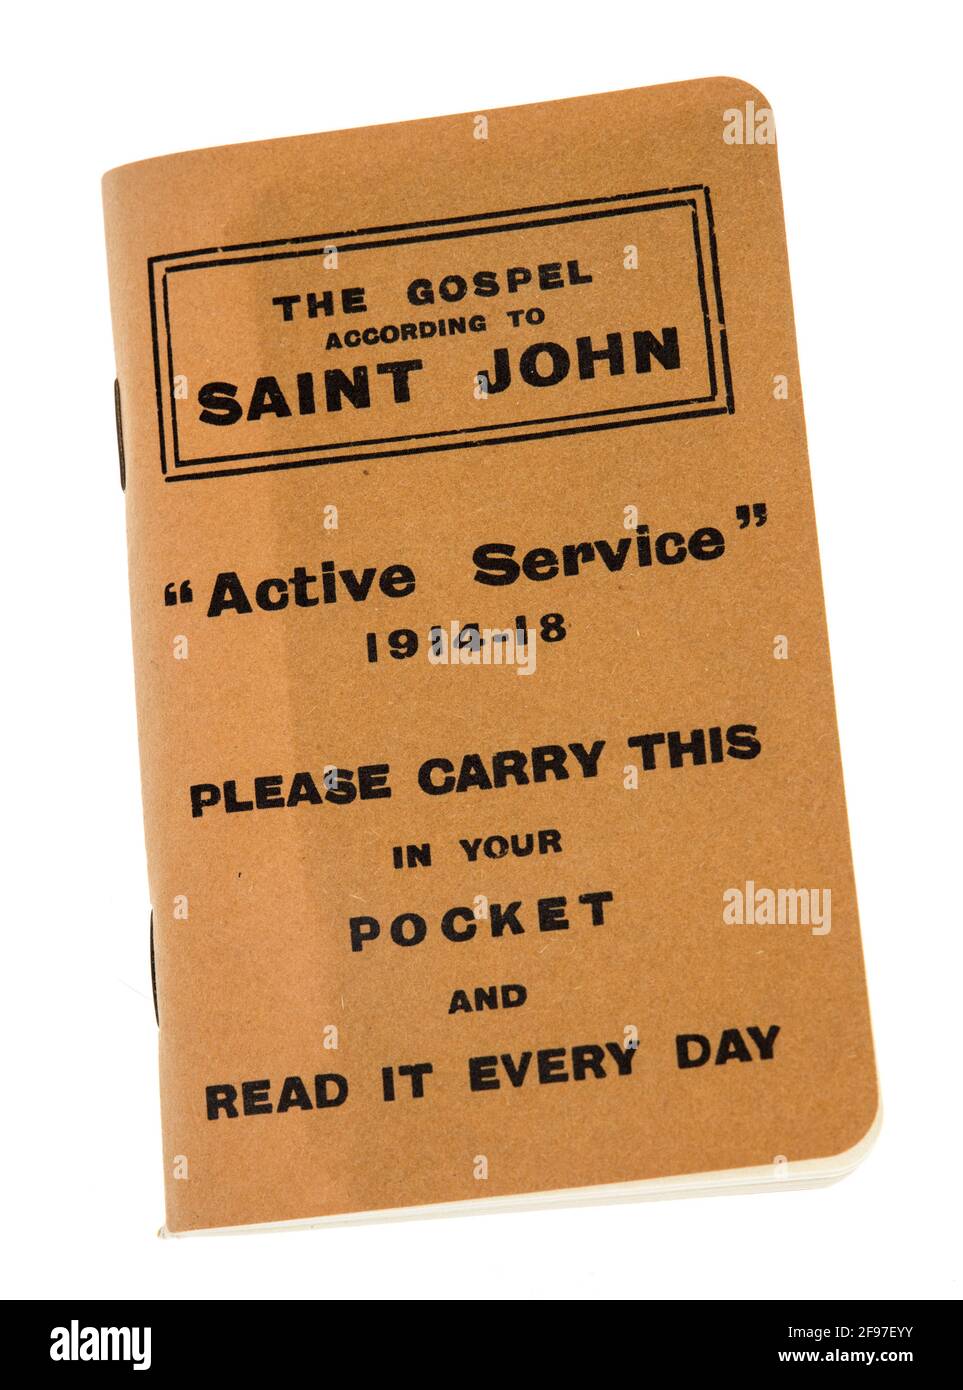 Das Evangelium nach St. John, ein Büchlein, das von der Heiligen Schrift-Geschenk-Mission produziert und an britische Soldaten im aktiven Dienst während der ersten gegeben wurde Stockfoto